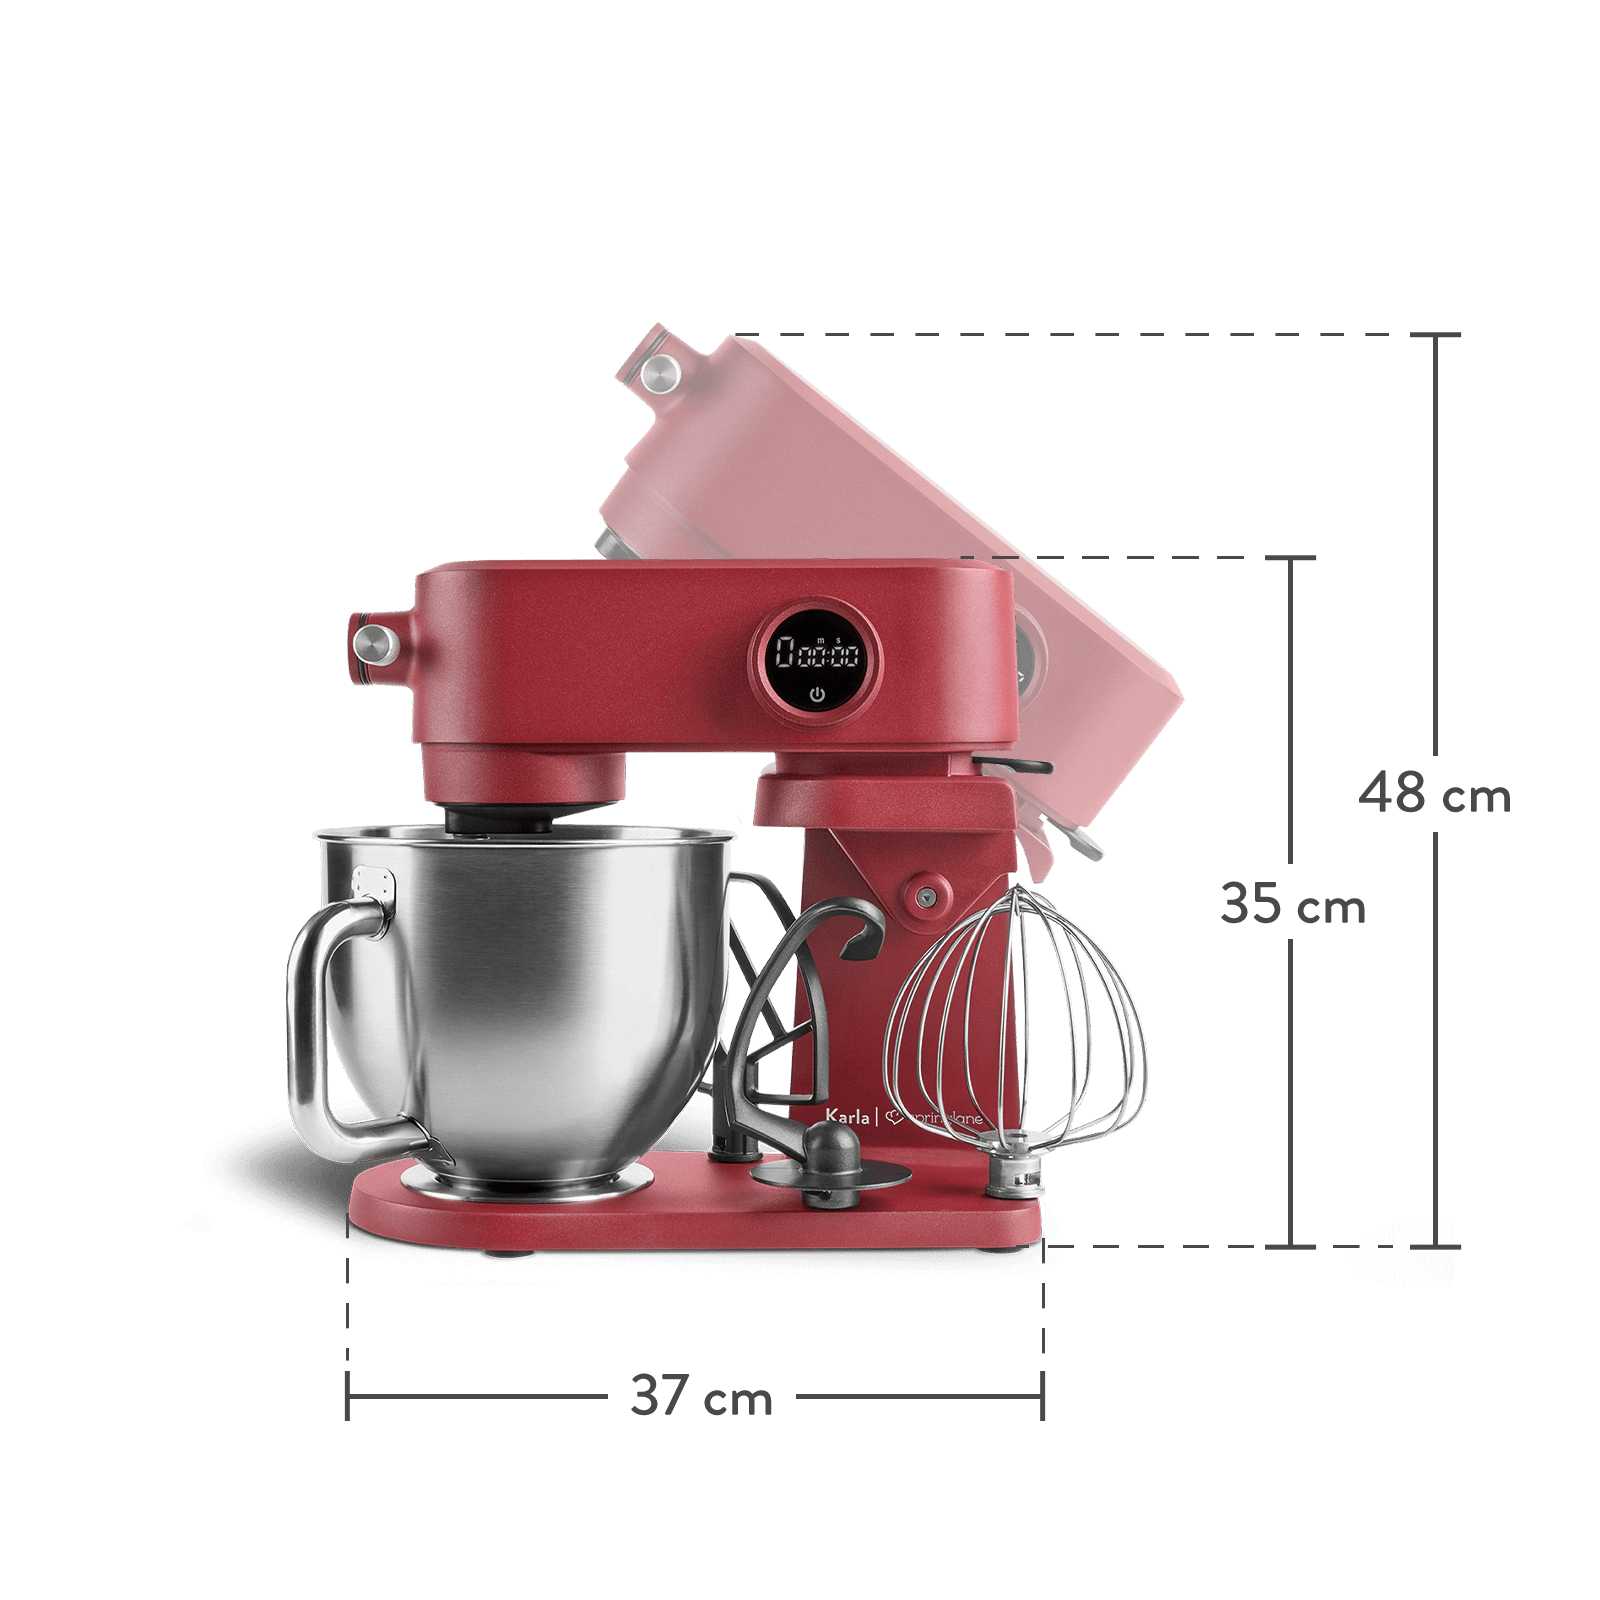 Küchenmaschine Karla - 800 Watt 5,2 l inkl. Rührwerkzeug und Rührschüssel - Rot